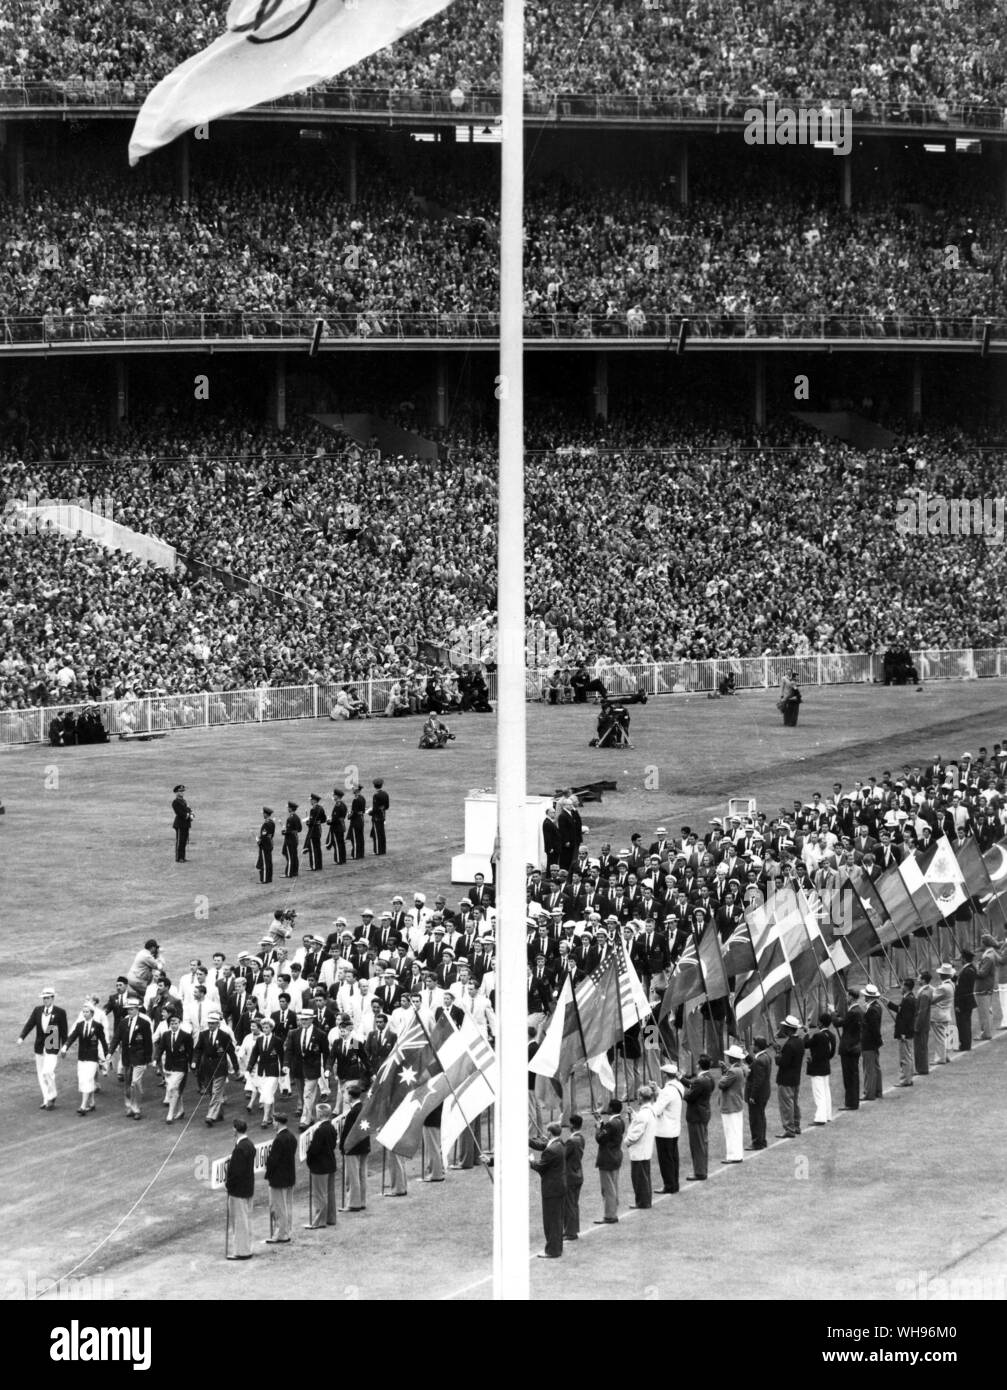 Aus., Melbourne, Jeux Olympiques, 1956 : Cérémonie de Clôture Banque D'Images